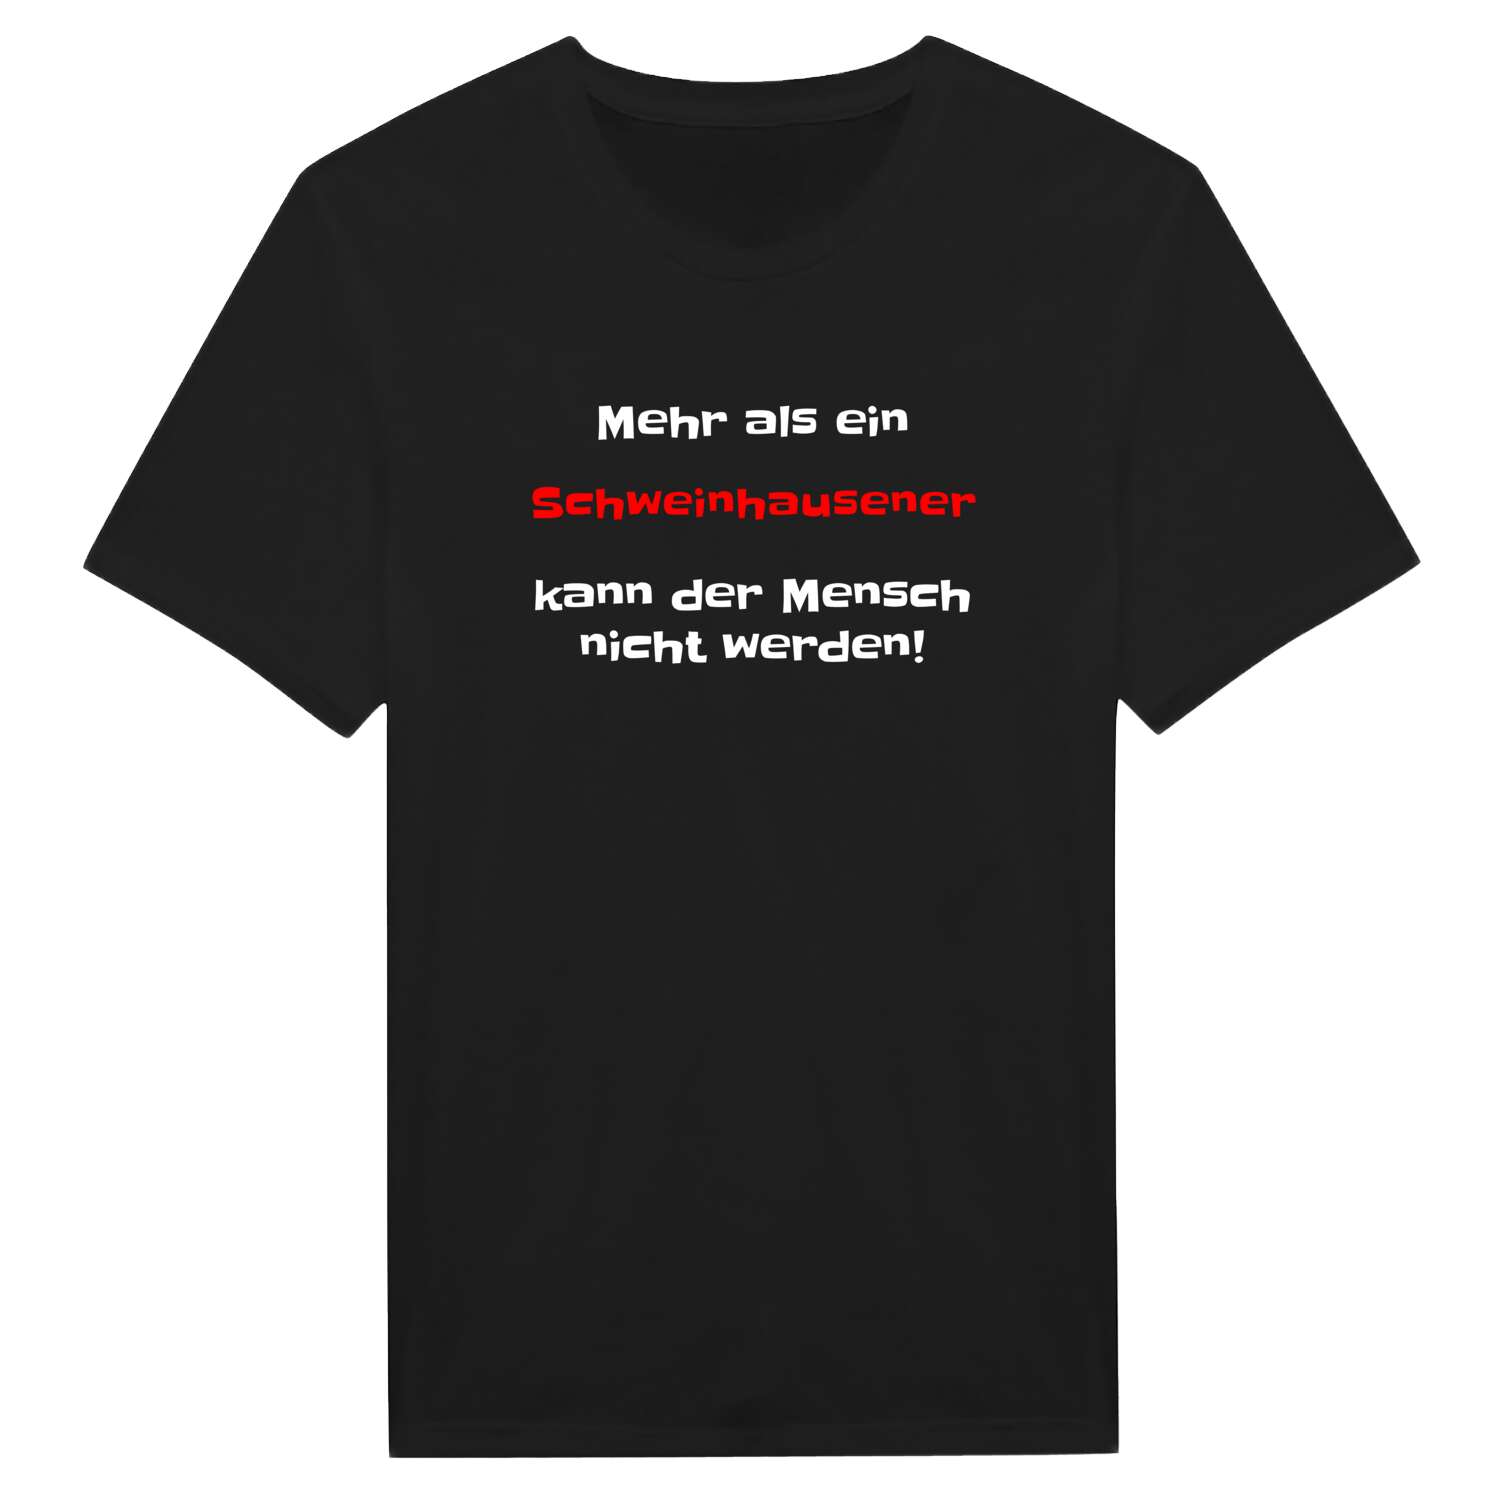 Schweinhausen T-Shirt »Mehr als ein«